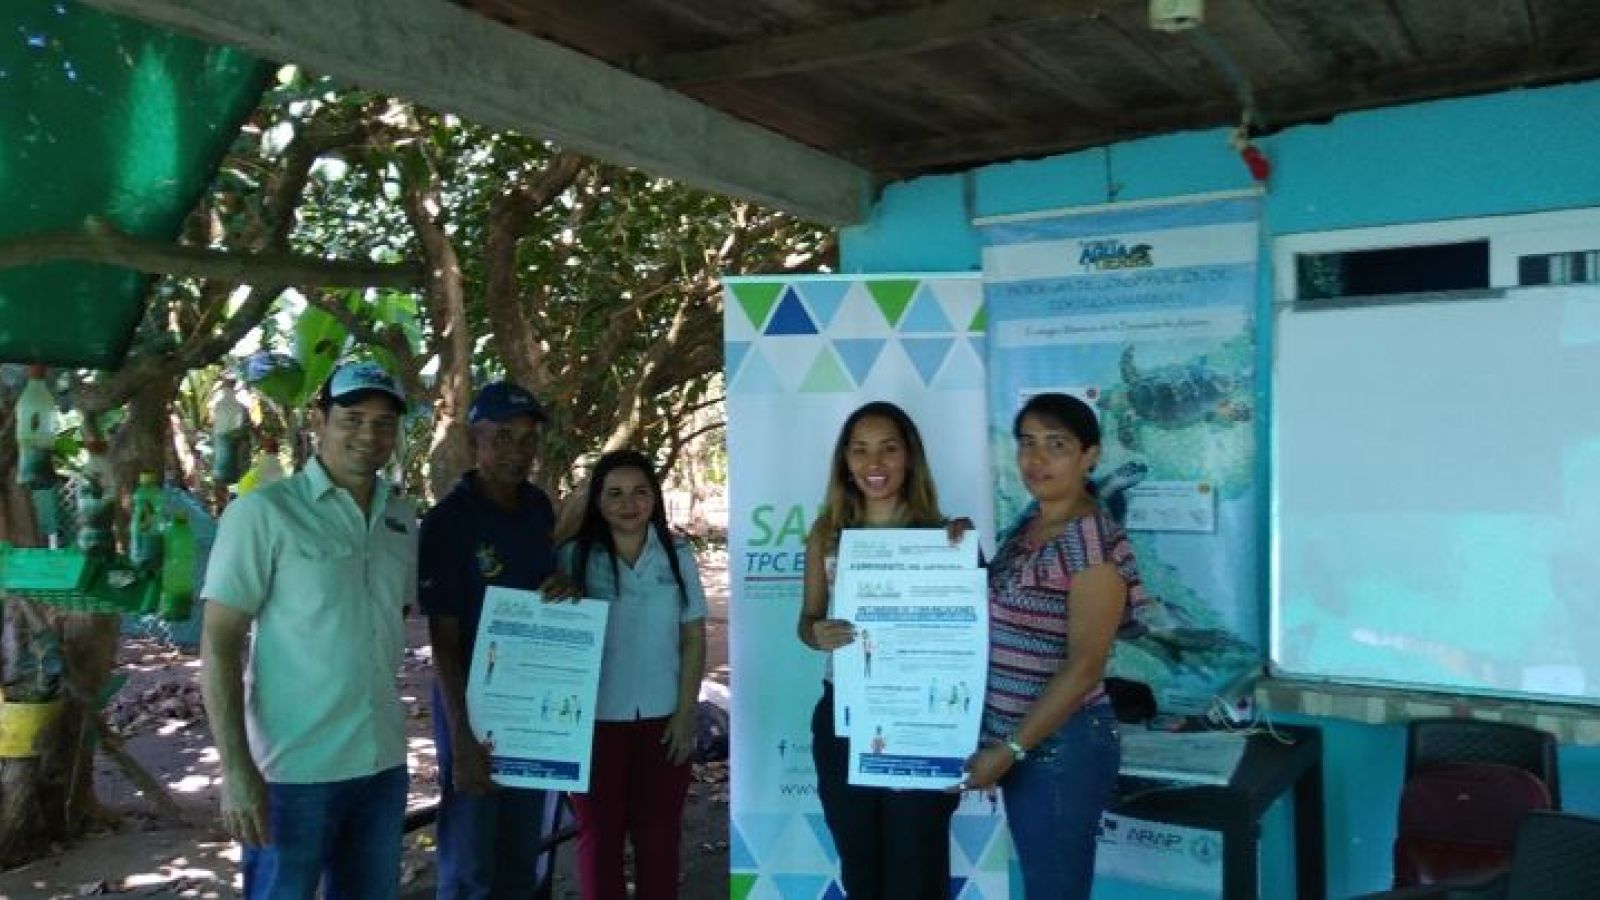 foto de noticia SALA-SEEM Organiza: Reunión de divulgación con Fundación Agua y Tierra y otras organizaciones Agro-ecoturísticas y Ambientales de la región de Mariato en Veraguas y áreas aledañas